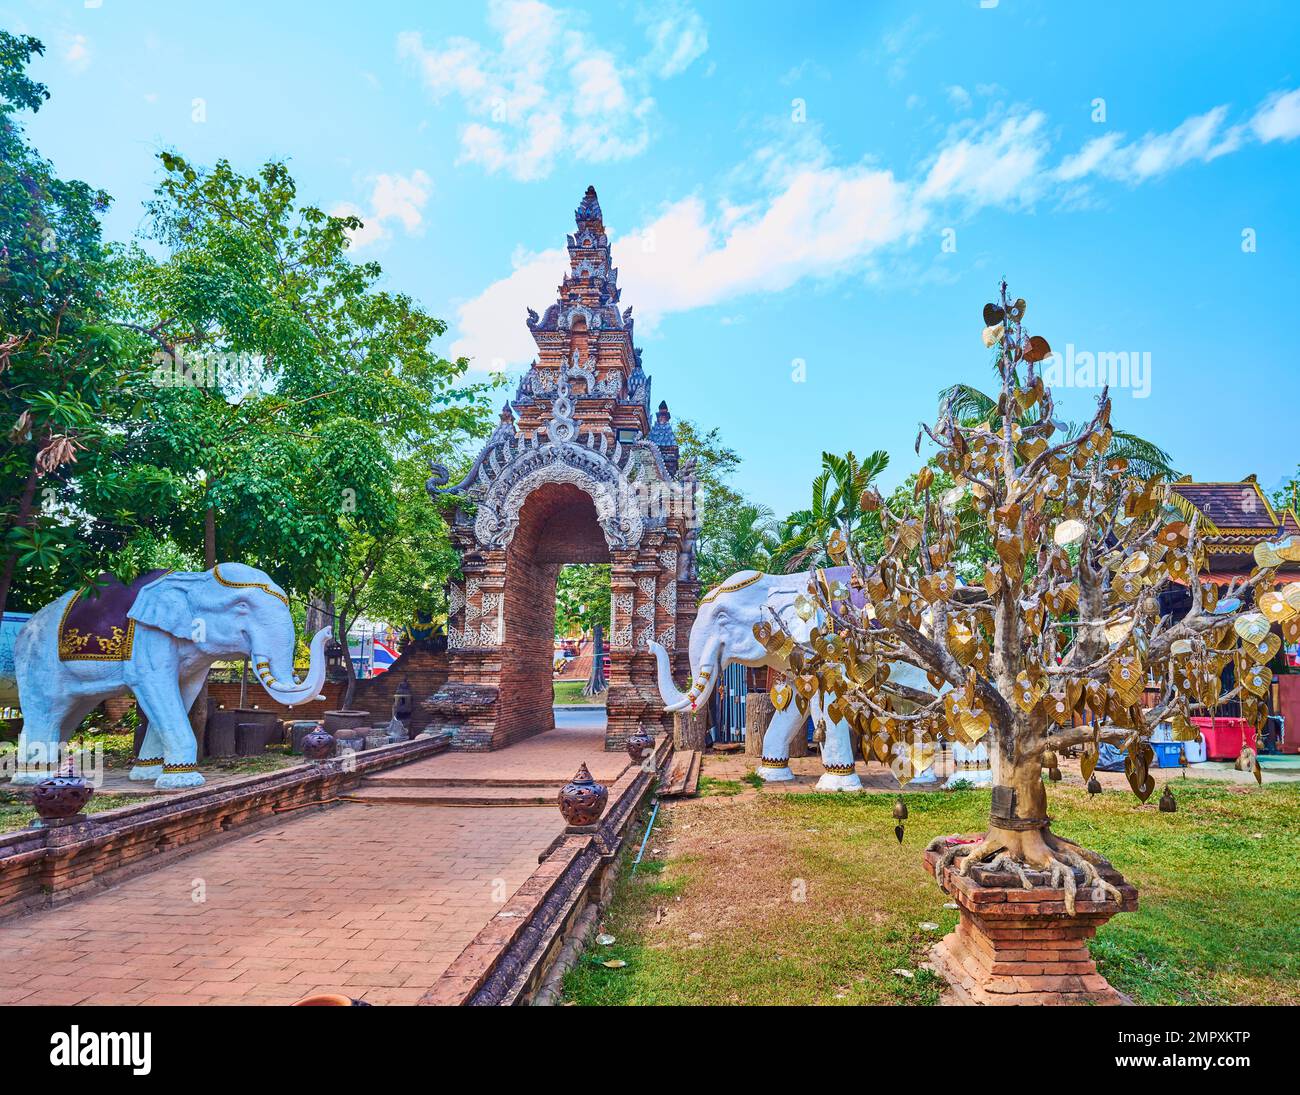 Das Gelände des Wat Lok Moli mit Blick auf das mittelalterliche Ziegeltor, Elefantenstatuen und den goldenen Bodhi Tree, Chiang Mai, Thailand Stockfoto